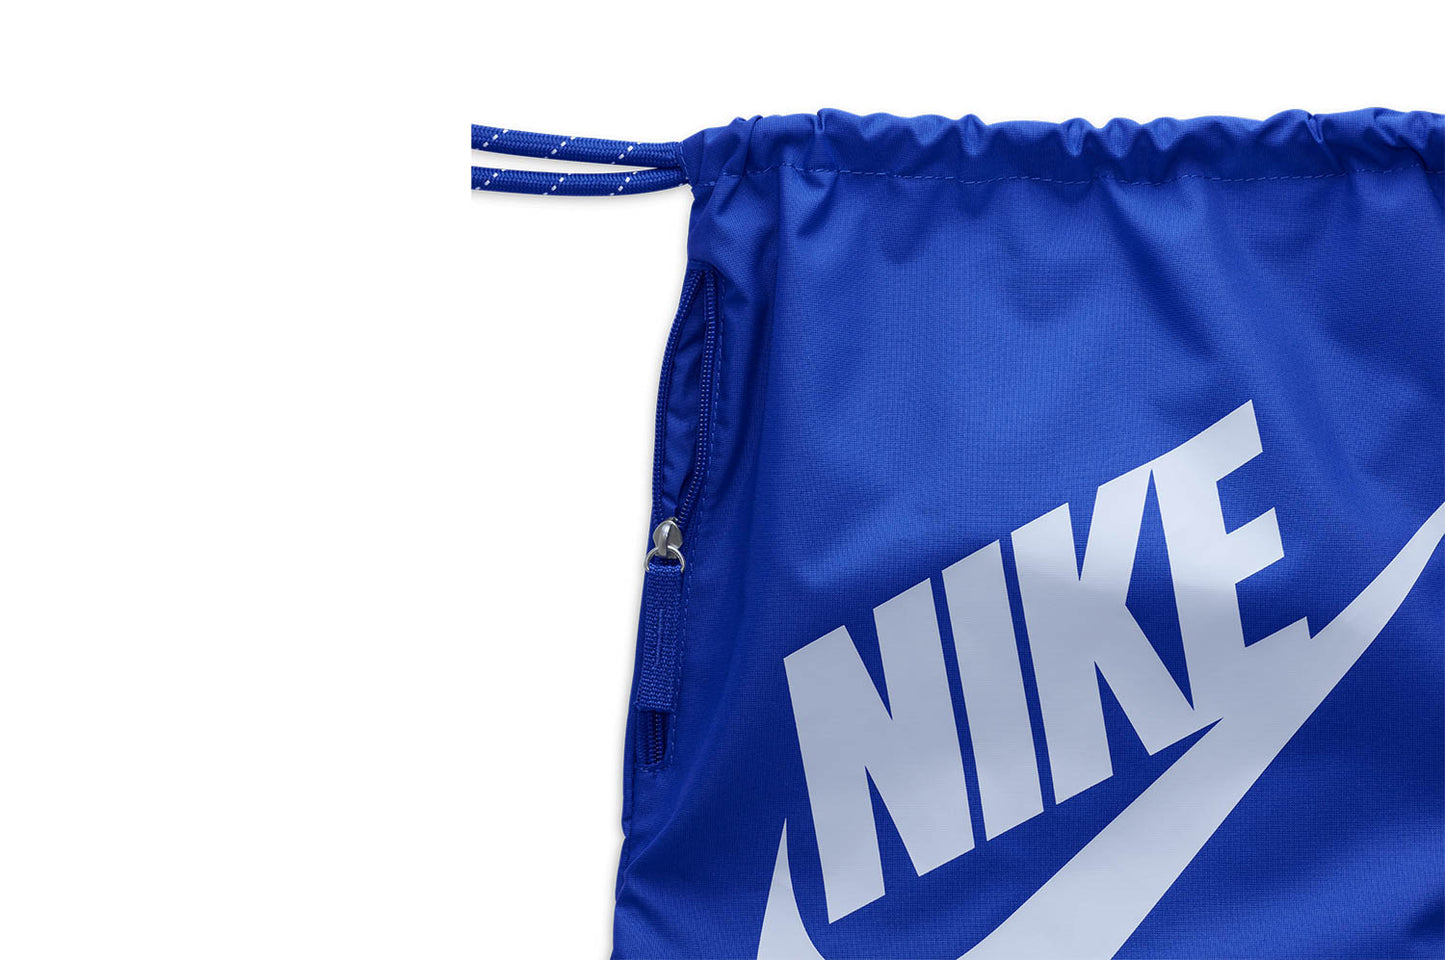 Nike Heritage Drawstring Bag (13L).